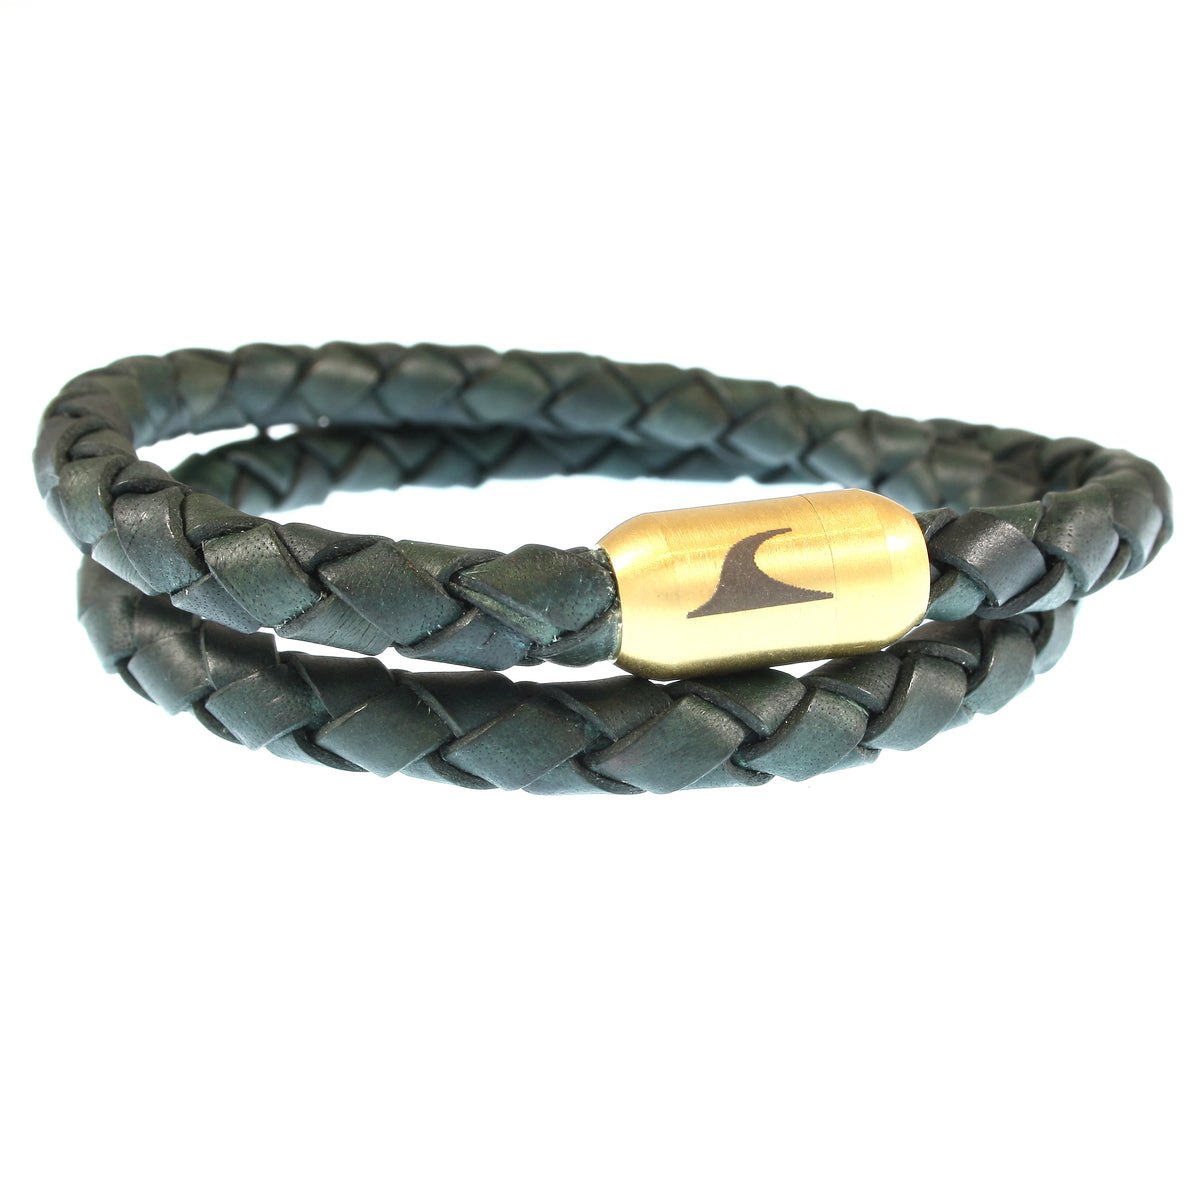 Herren-Leder-Armband-hawaii-gruen-gold-geflochten-Edelstahlverschluss-vorn-wavepirate-shop-f